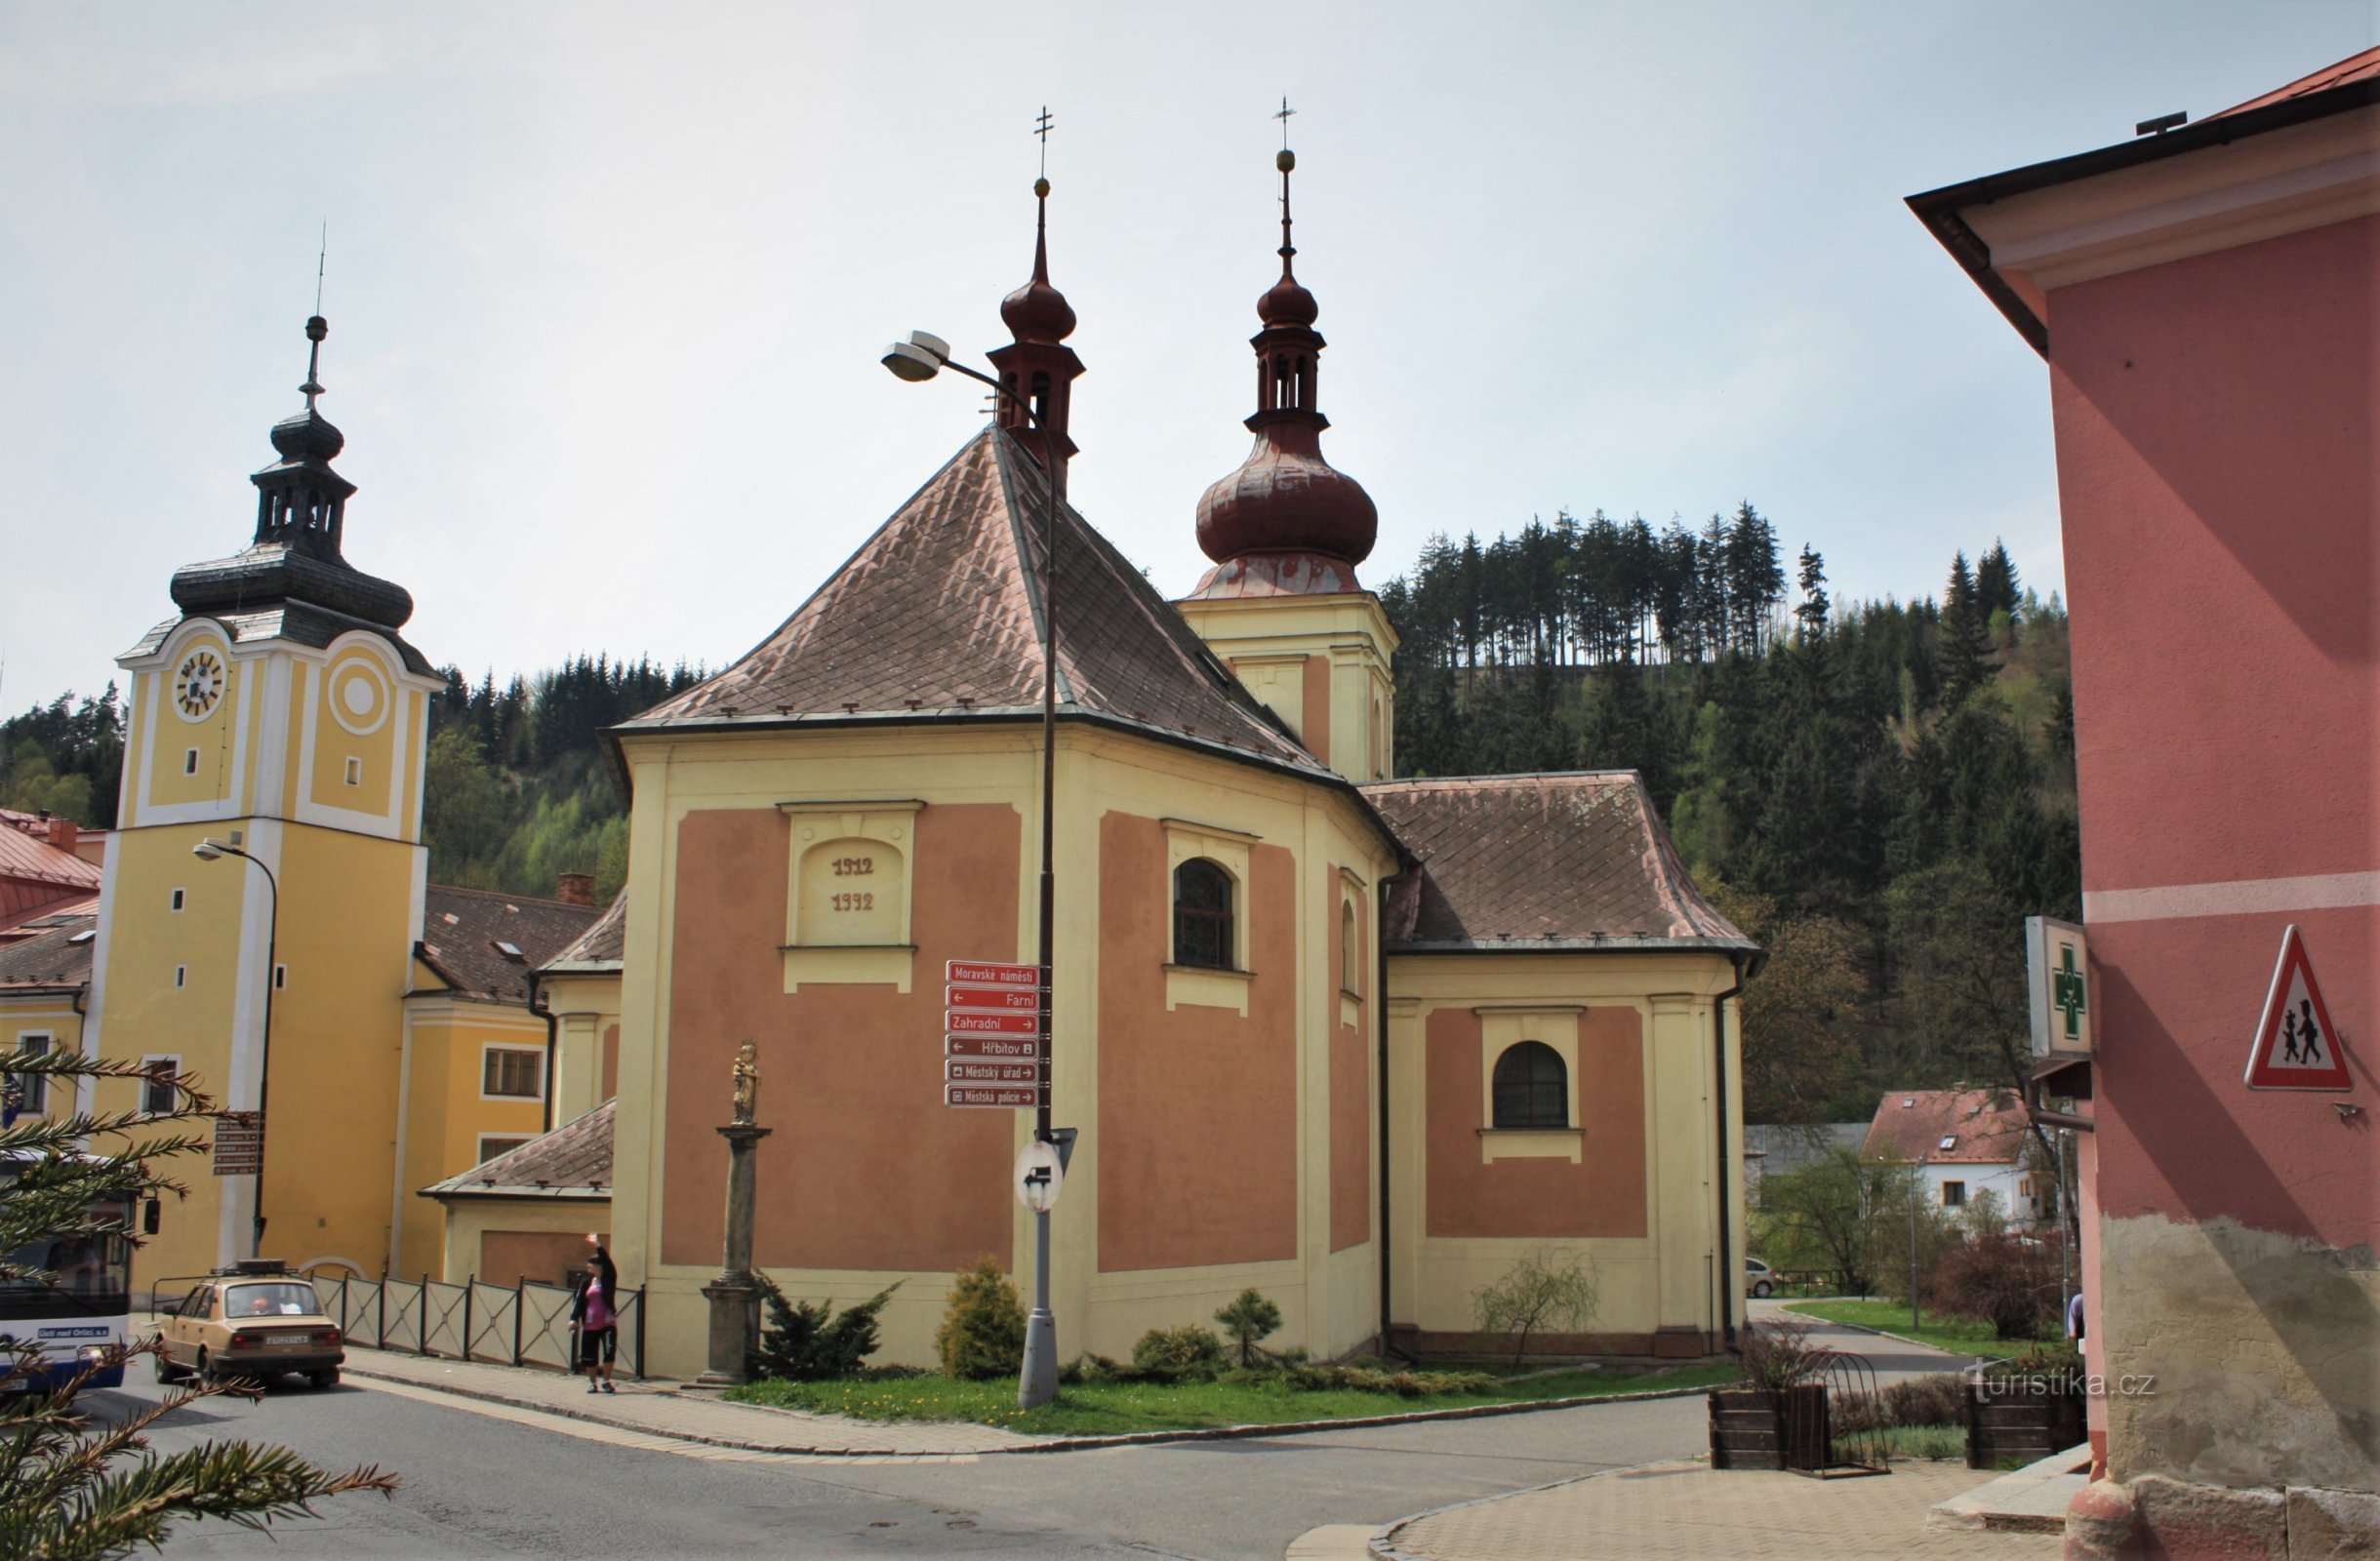 Březová nad Svitavou - városháza és a Szent István-templom. Bartholomew